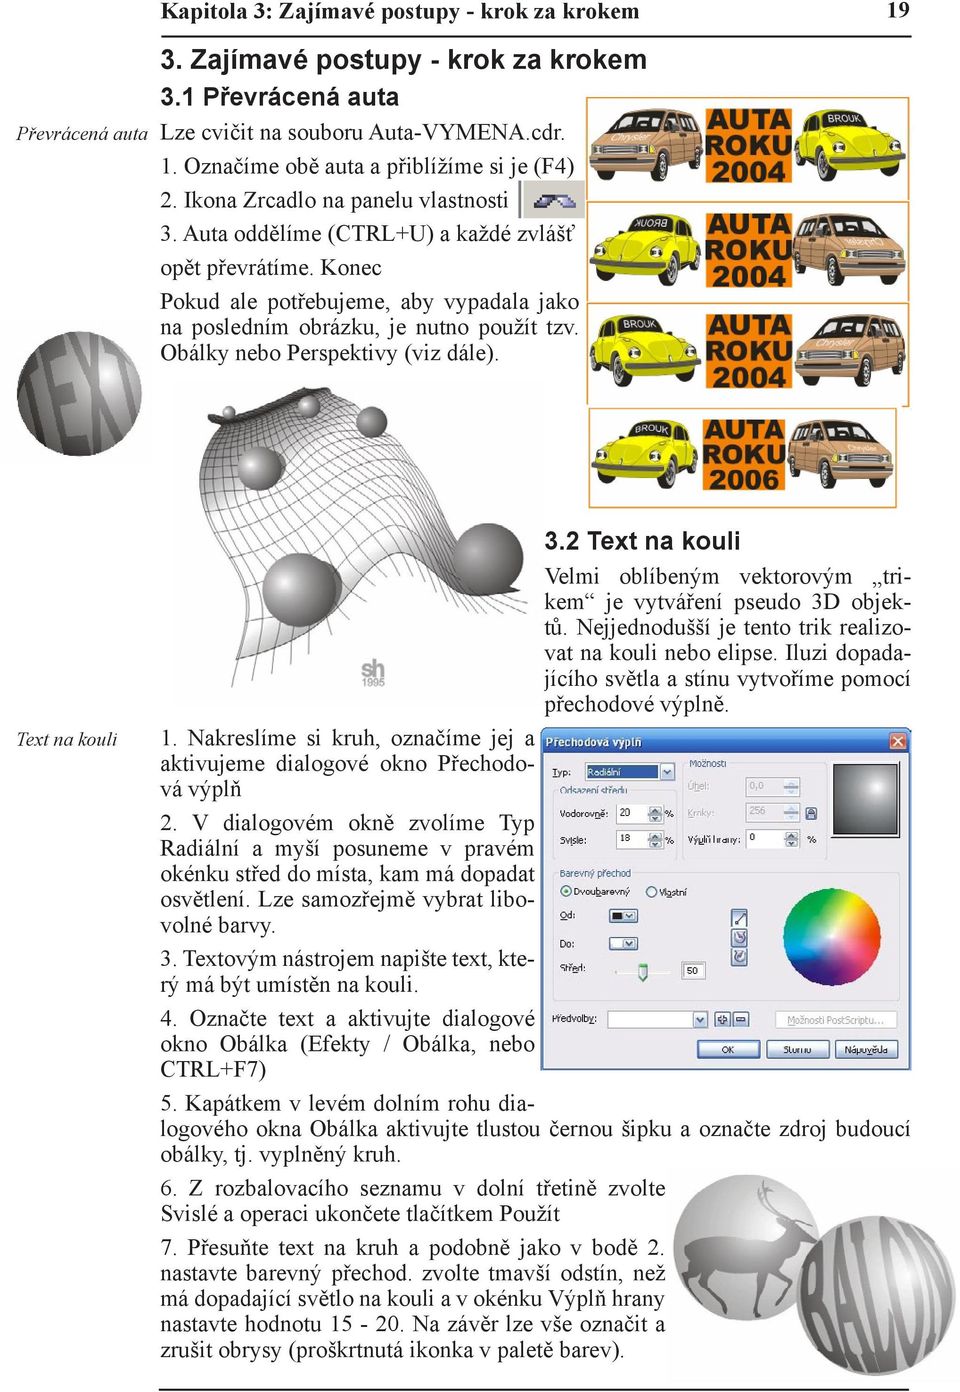 Obálky nebo Perspektivy (viz dále). Text na kouli 3.2 Text na kouli Velmi oblíbeným vektorovým trikem je vytváření pseudo 3D objektů. Nejjednodušší je tento trik realizovat na kouli nebo elipse.